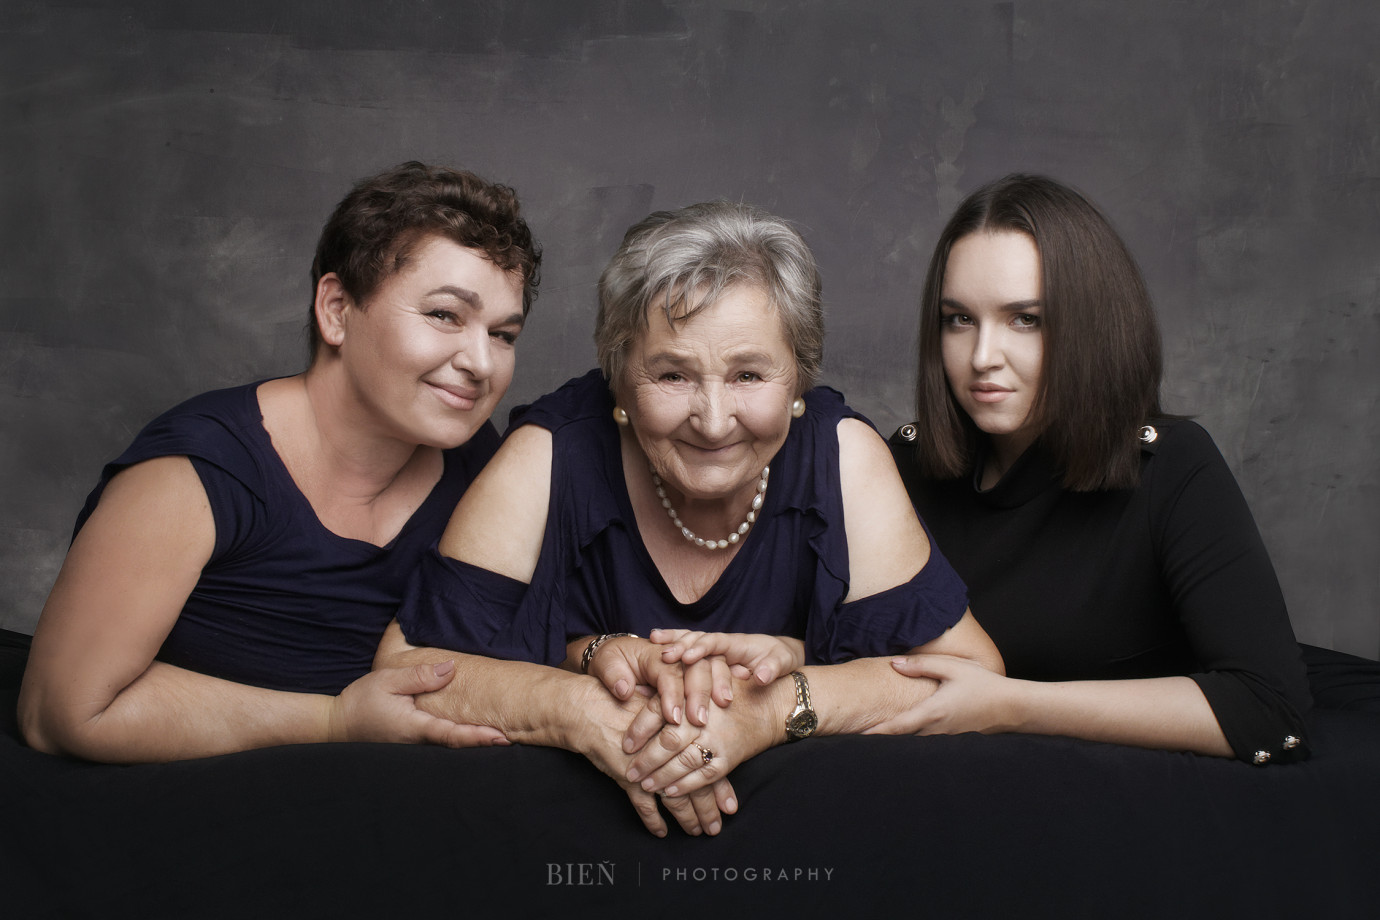 fotograf wroclaw justyna-l-bien-bien-photography portfolio zdjecia rodzinne fotografia rodzinna sesja